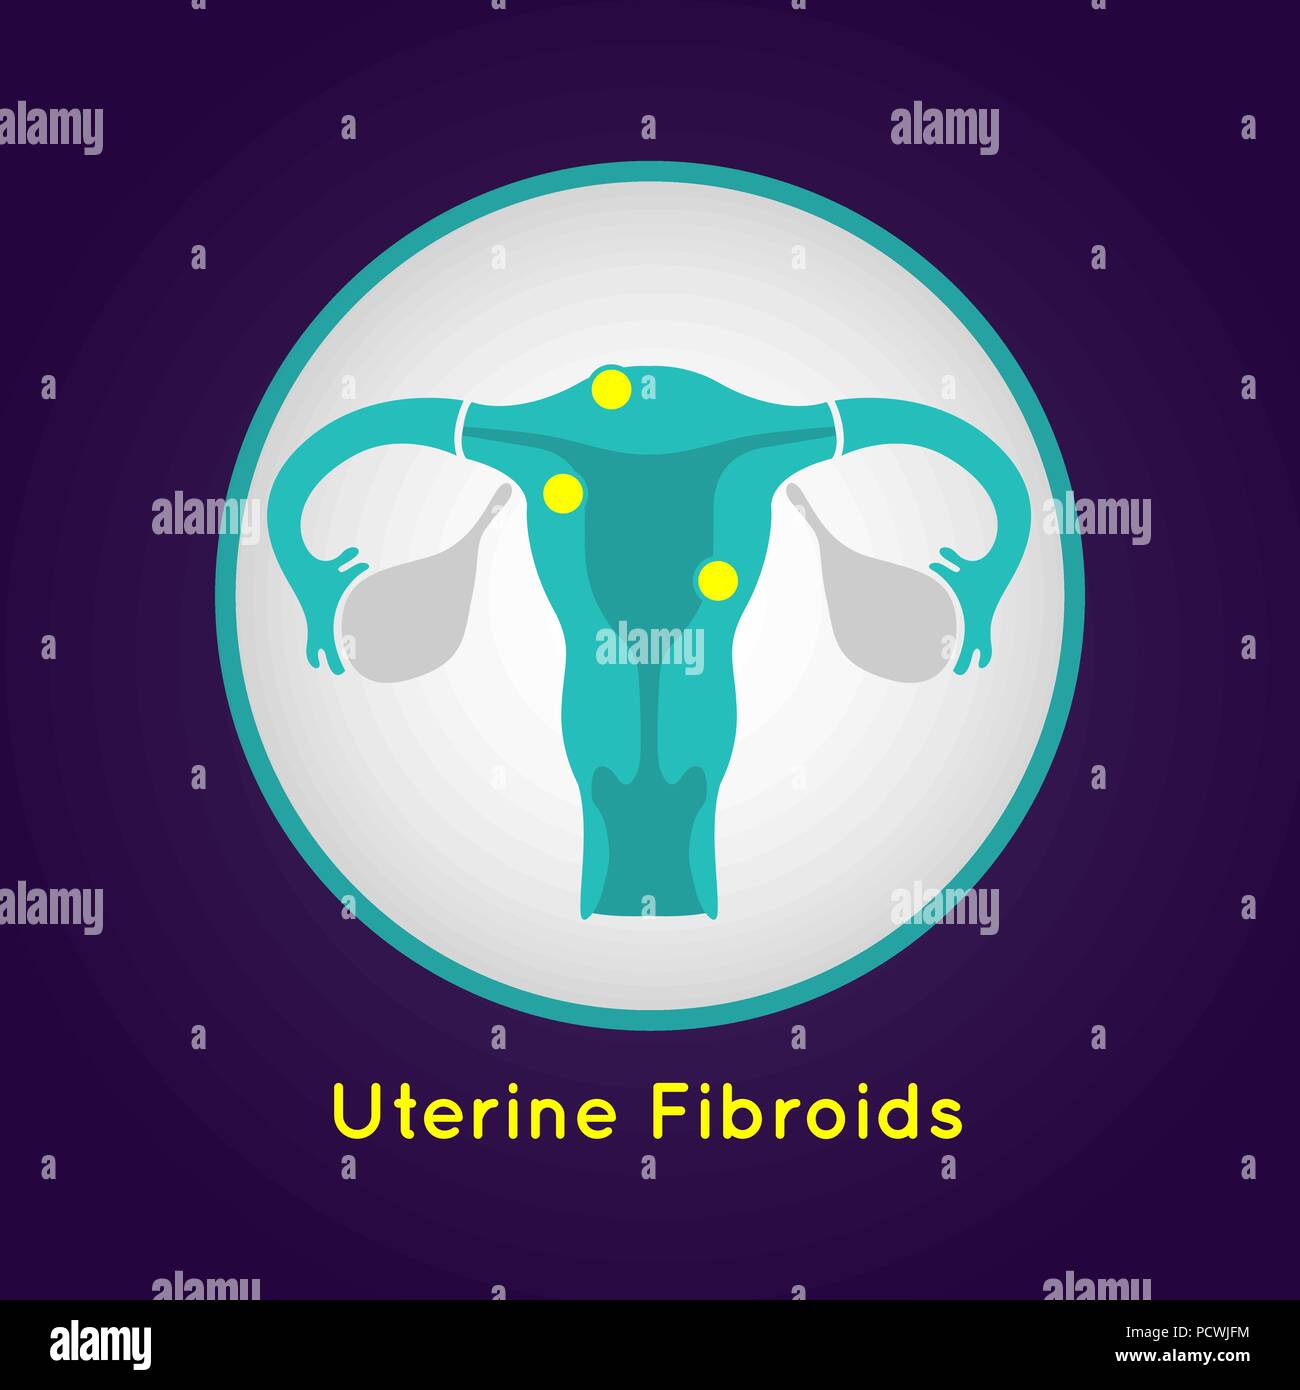 Uterine Fibroids logo vector icon design illustration Stock Vector